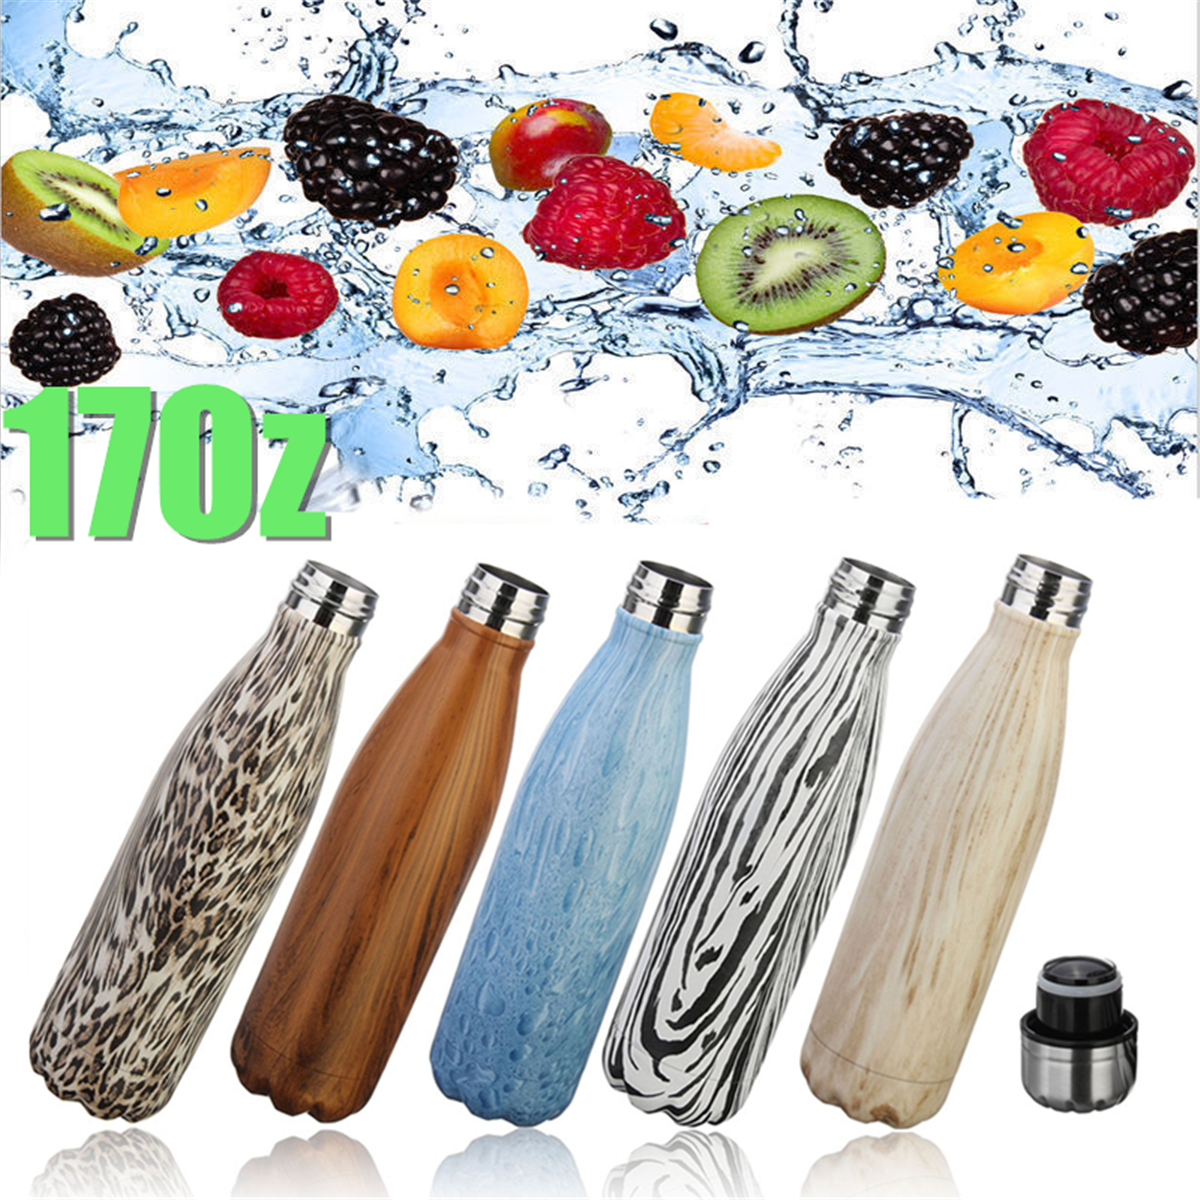 17oz-Simple-Creative-Thremos-Cup-Vacuum-Stainless-Steel-Water-Bottle-Vacuum-Water-Bottles-1076986-2